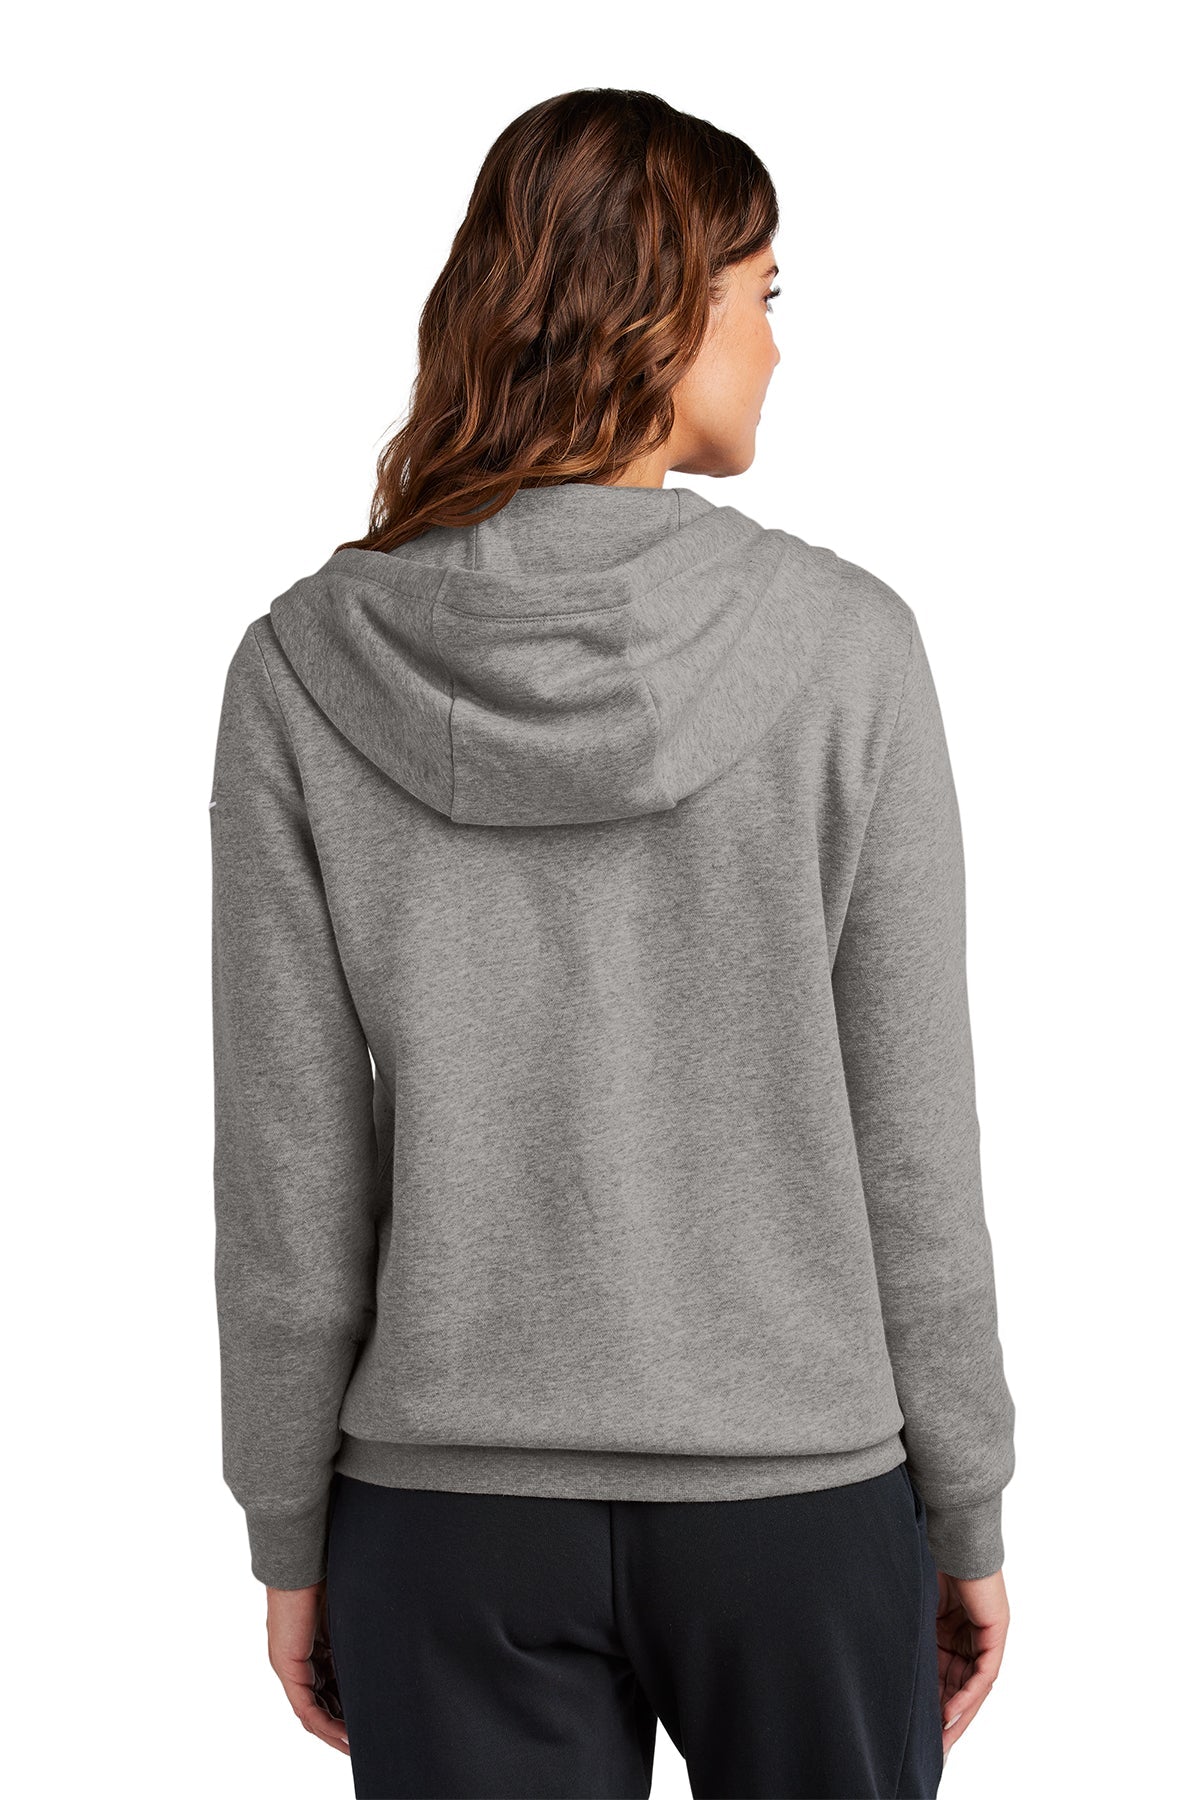 Nike Ladies Club Fleece Full-Zip Custom Hoodies, Charcoal Heather